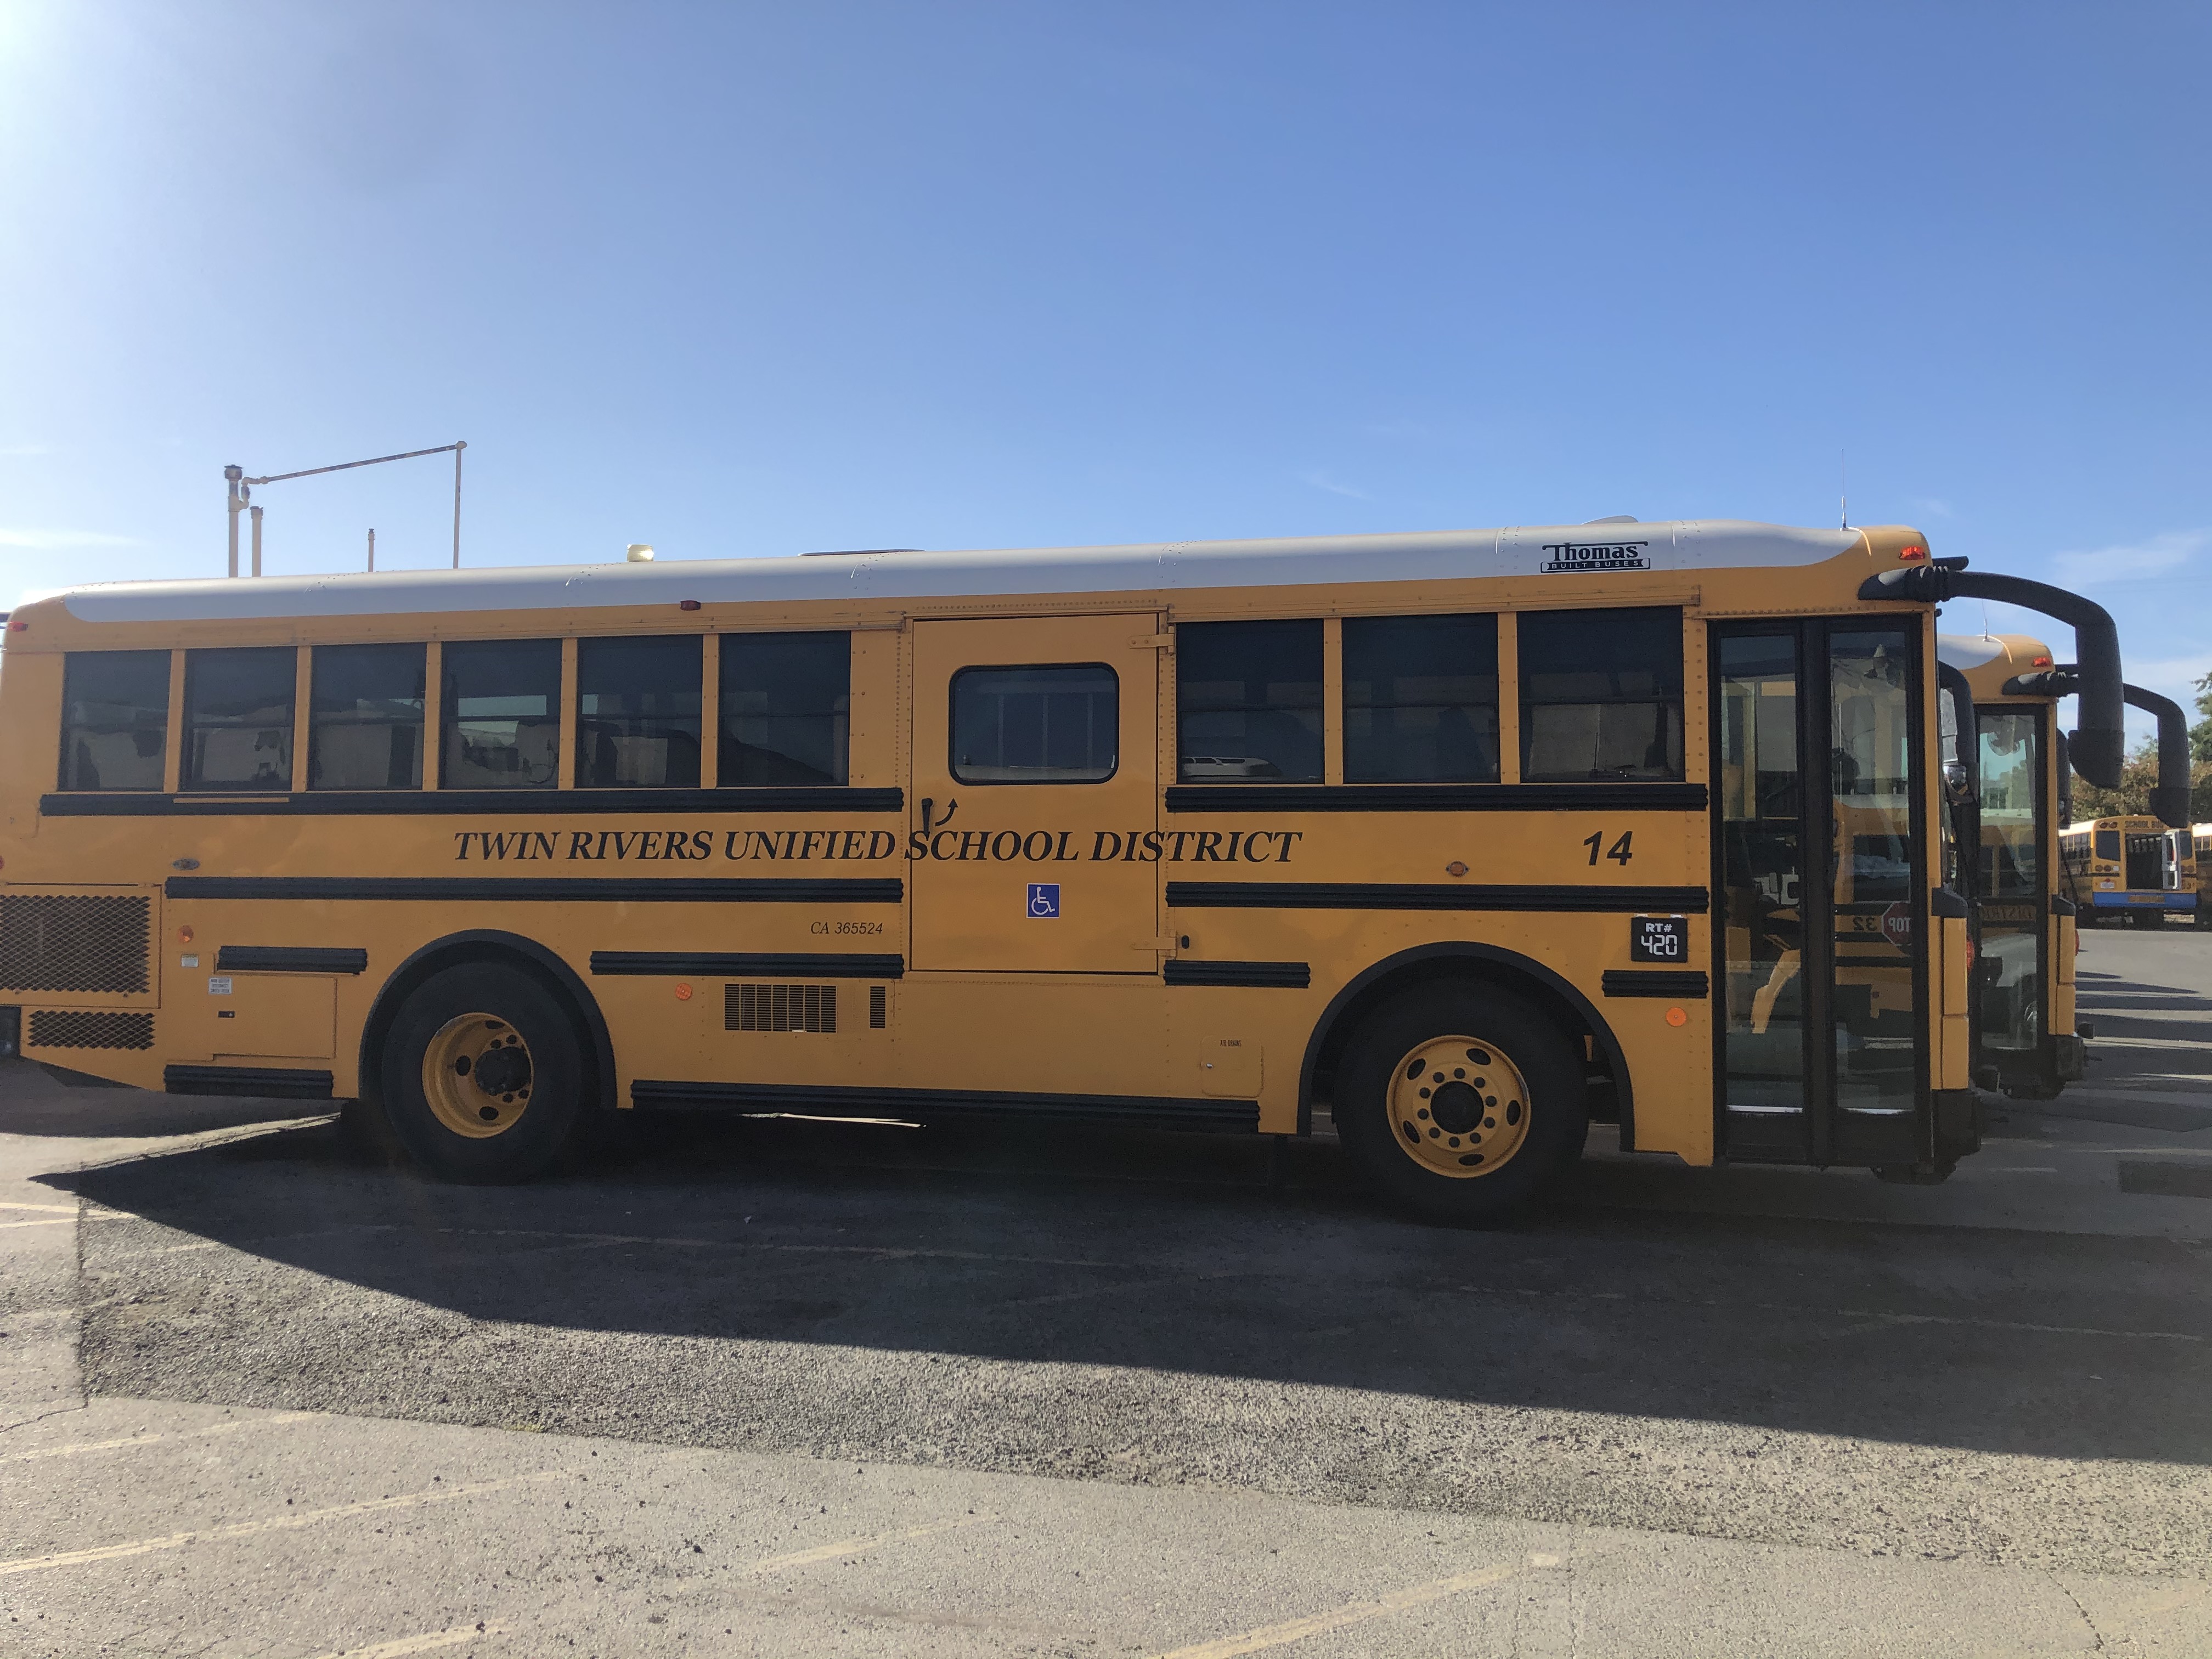 75 school buses now run on low-emission renewable diesel